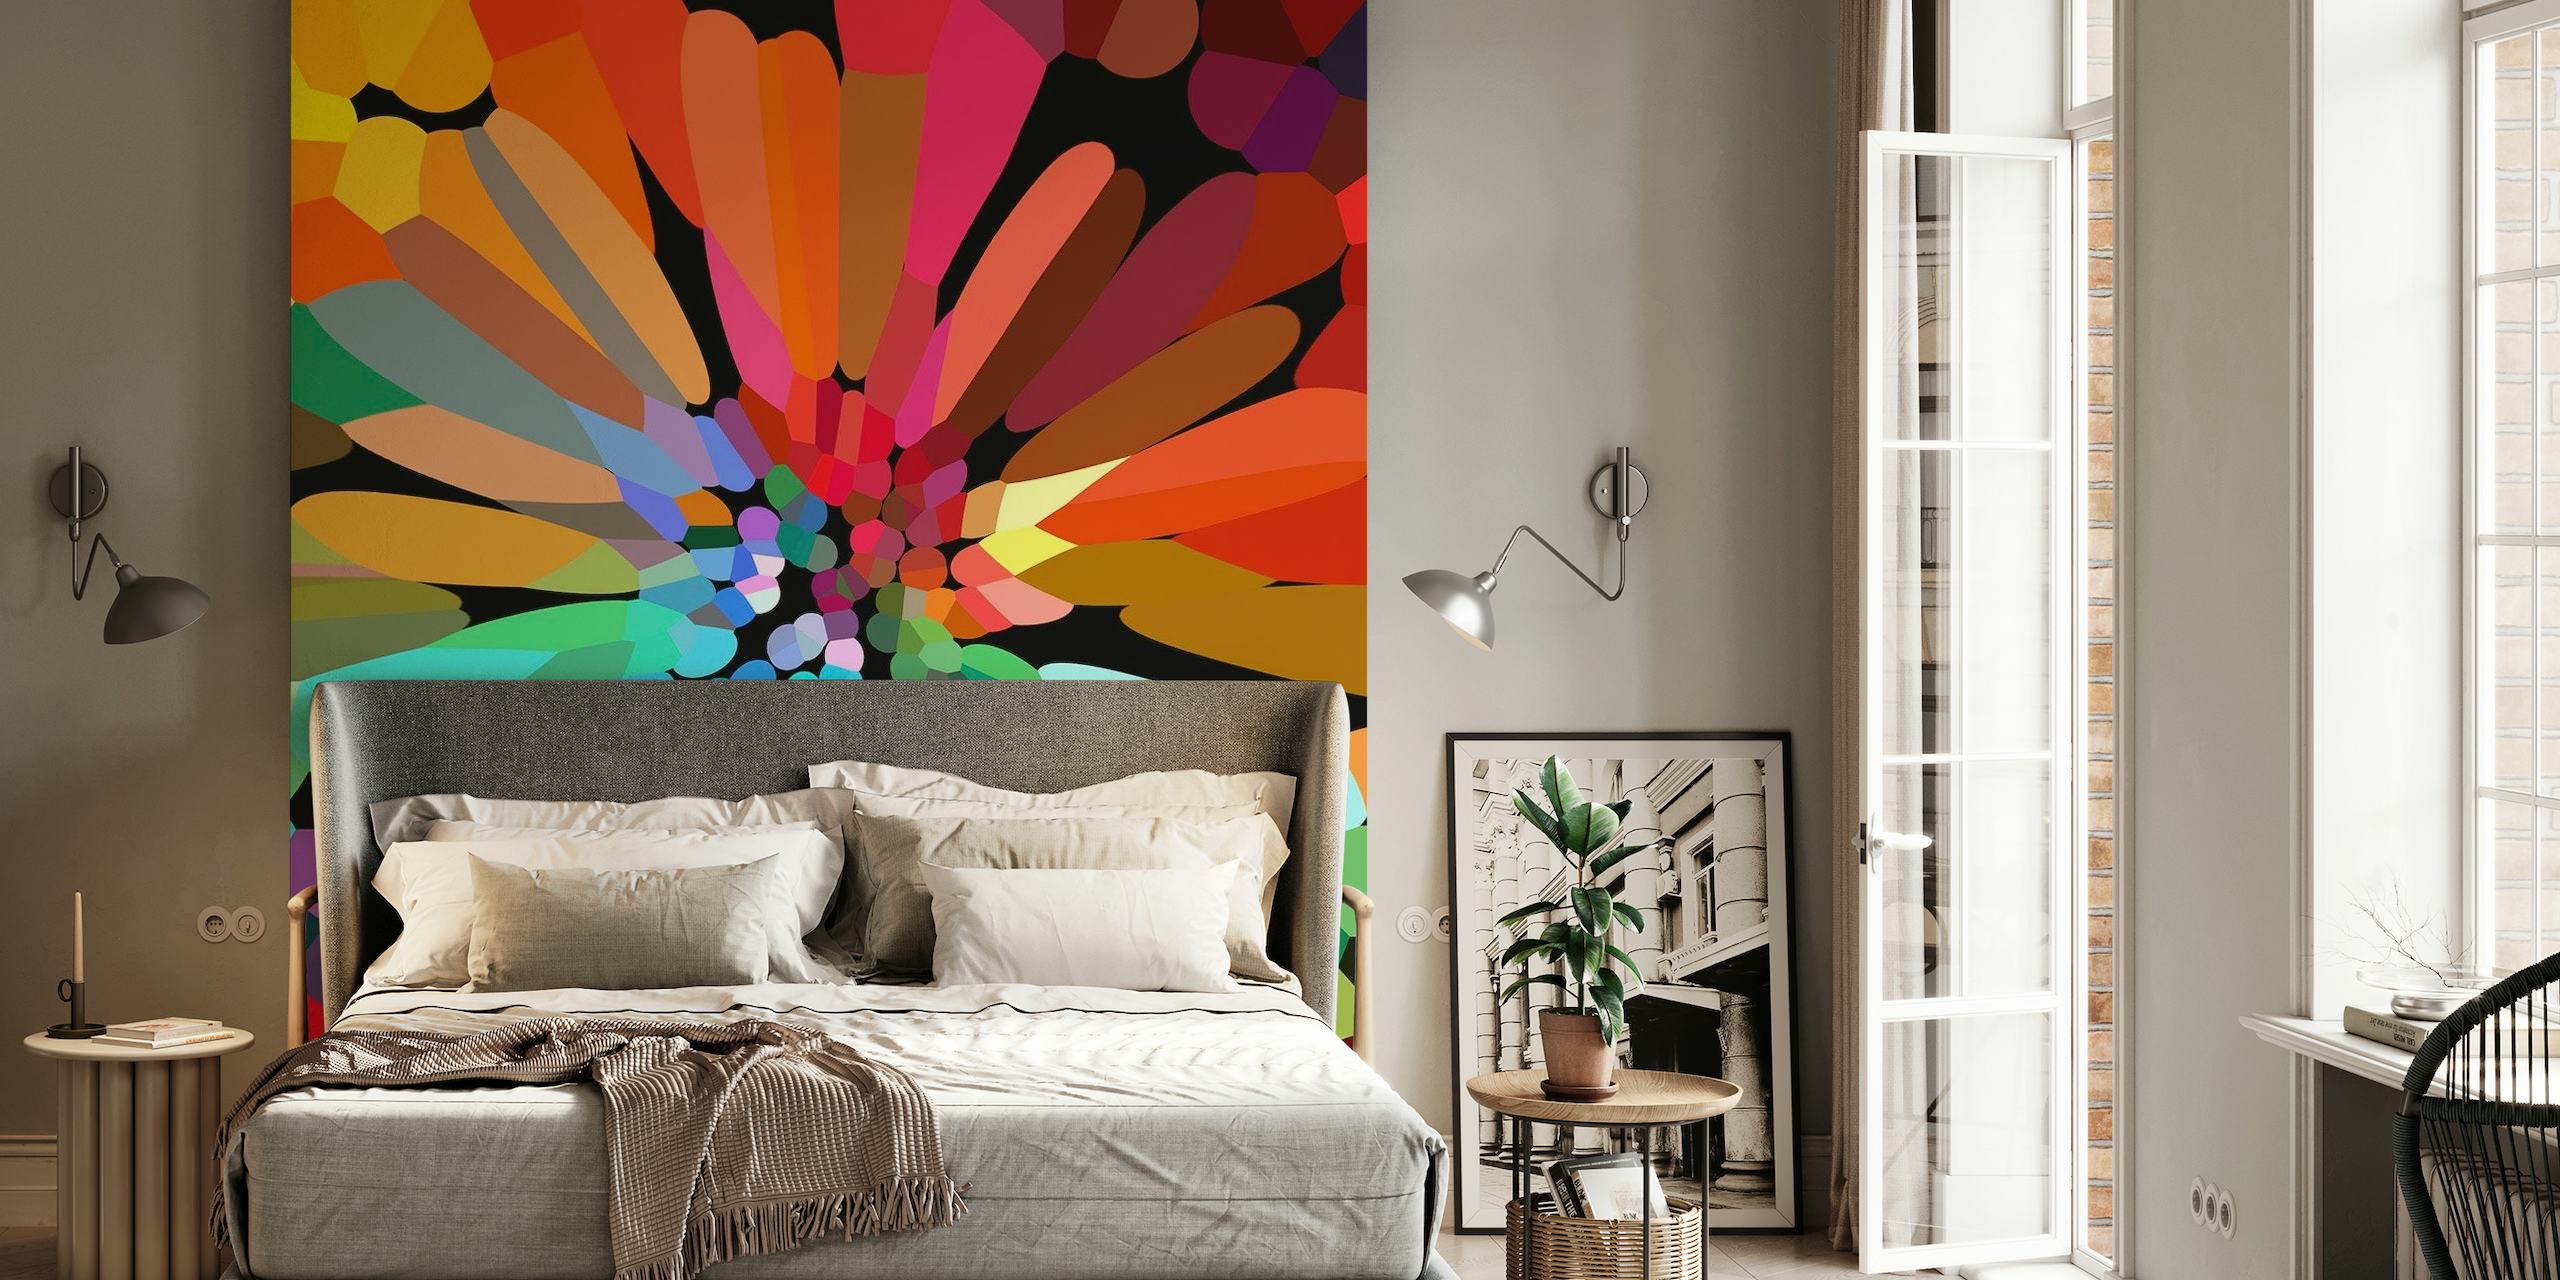 Abstract Funky Flower fotobehang met een caleidoscoop van levendige kleuren en bloempatronen